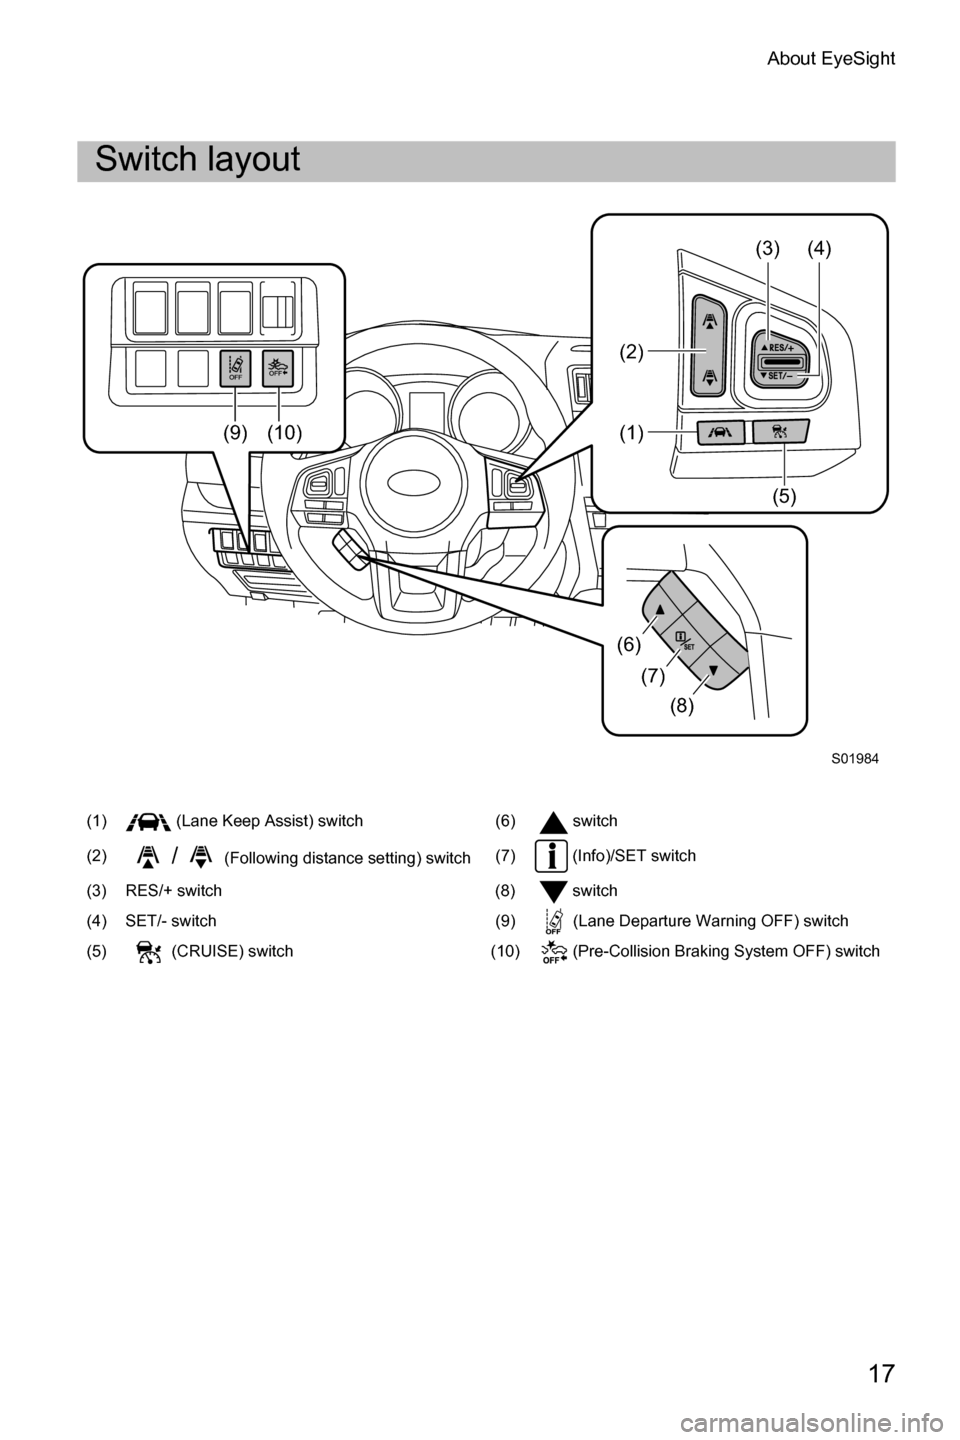 SUBARU LEGACY 2016 6.G Driving Assist Manual About EyeSight
17
Switch layout
(1)  (Lane Keep Assist) switch (6) switch
(2)
/(Following distance setting) switch(7)  (Info)/SET switch
(3) RES/+ switch (8) switch
(4) SET/- switch (9) (Lane Departur